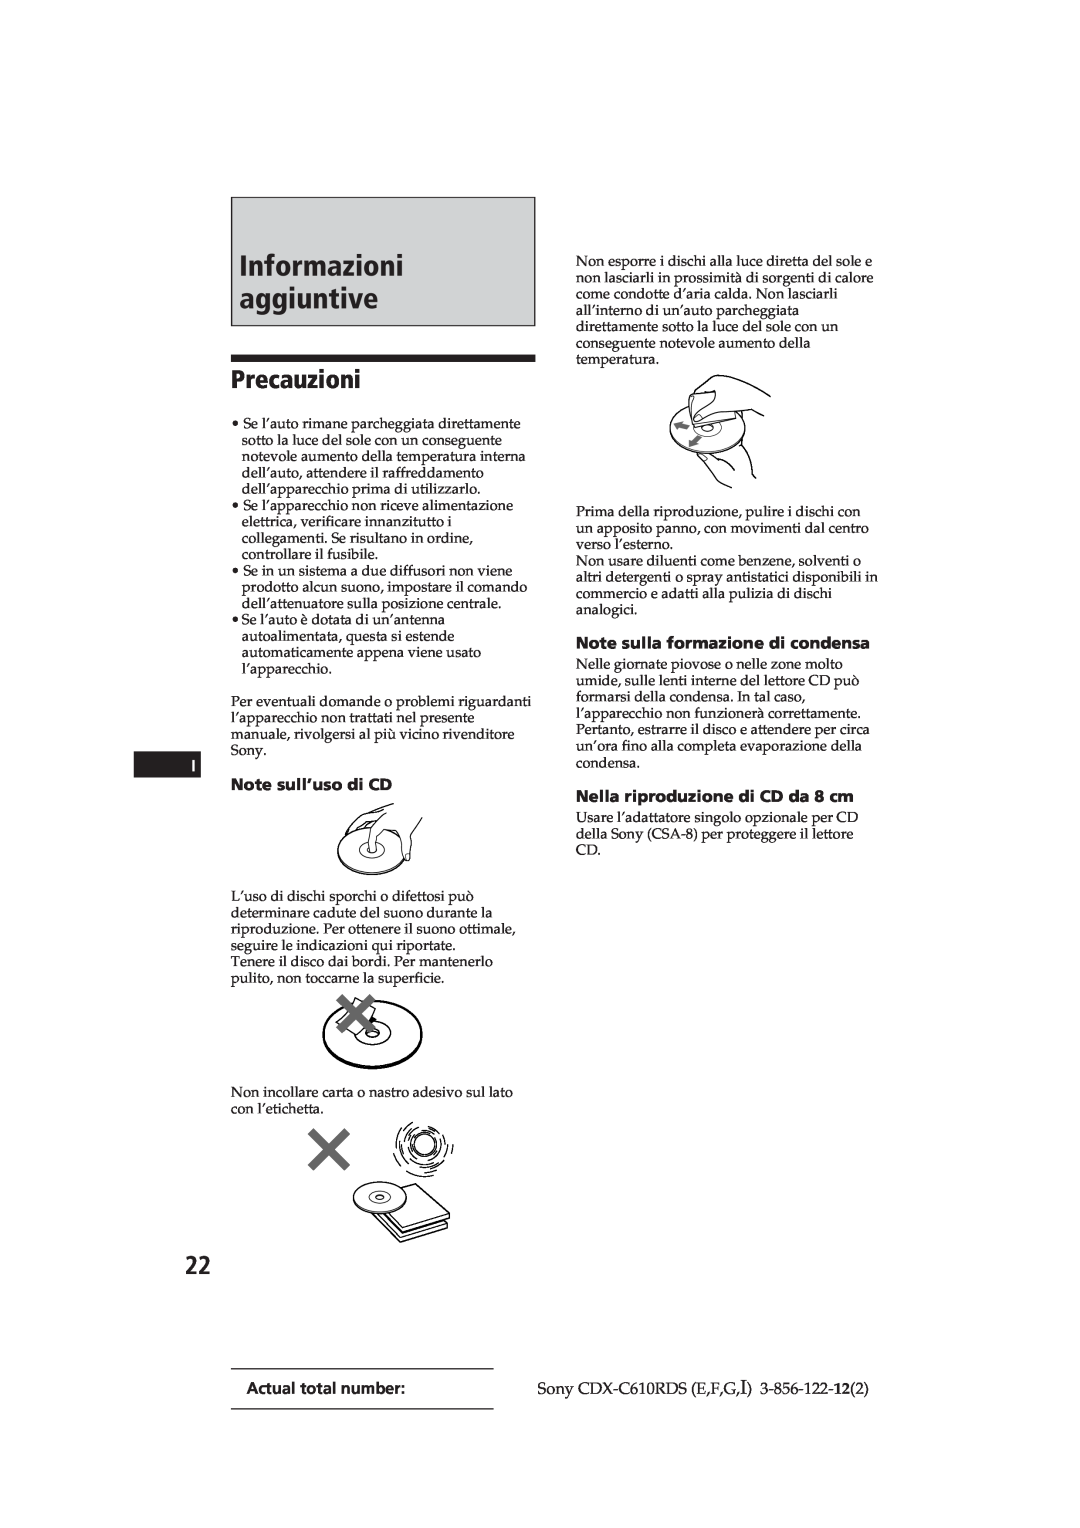 Sony CDX-C610RDS manual Informazioni aggiuntive, Precauzioni, Note sull’uso di CD, Note sulla formazione di condensa 